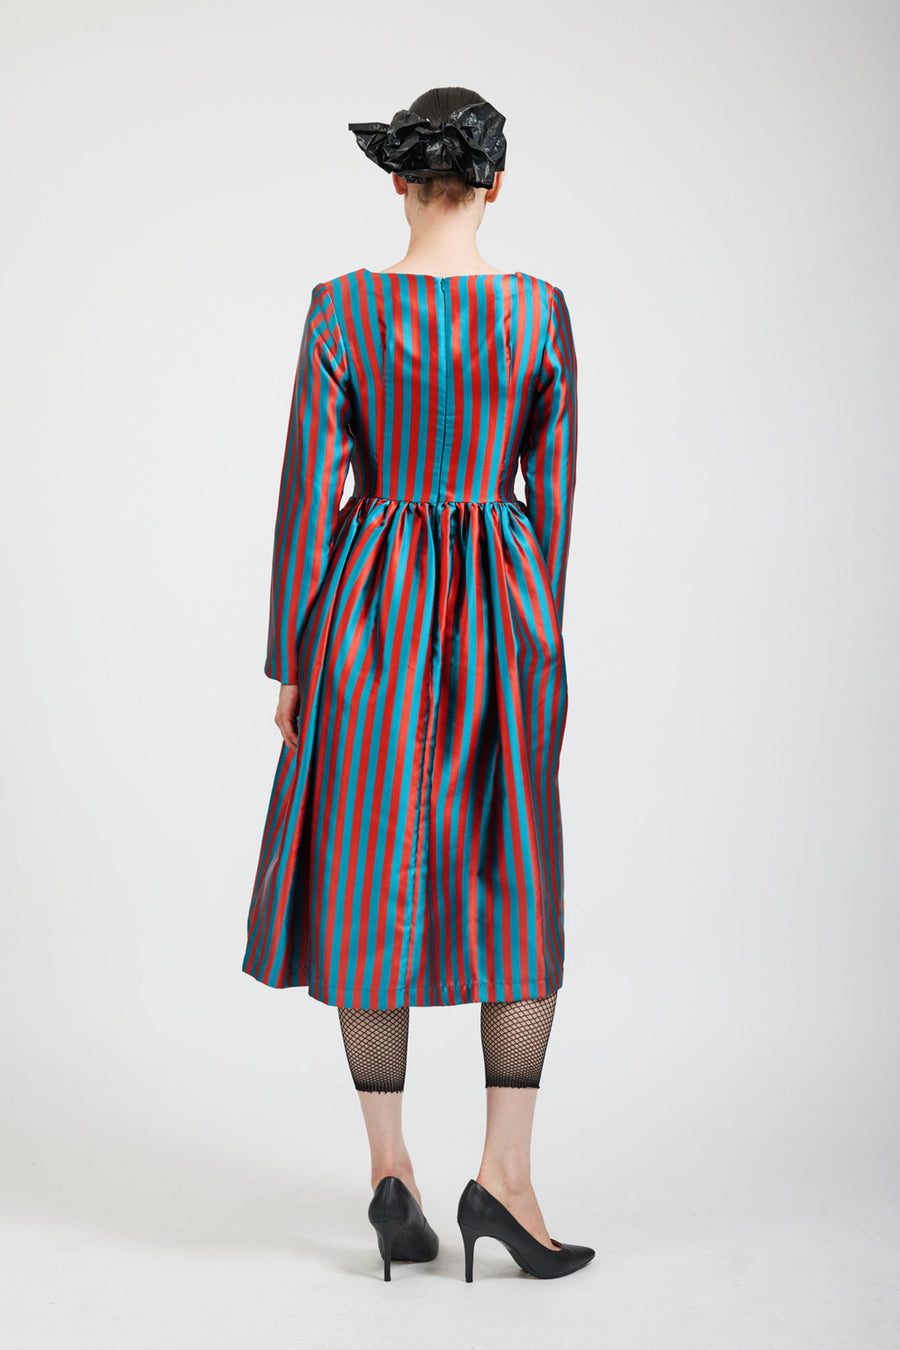 BATSHEVA - Vivienne Dress in Teal/Rust Stripe